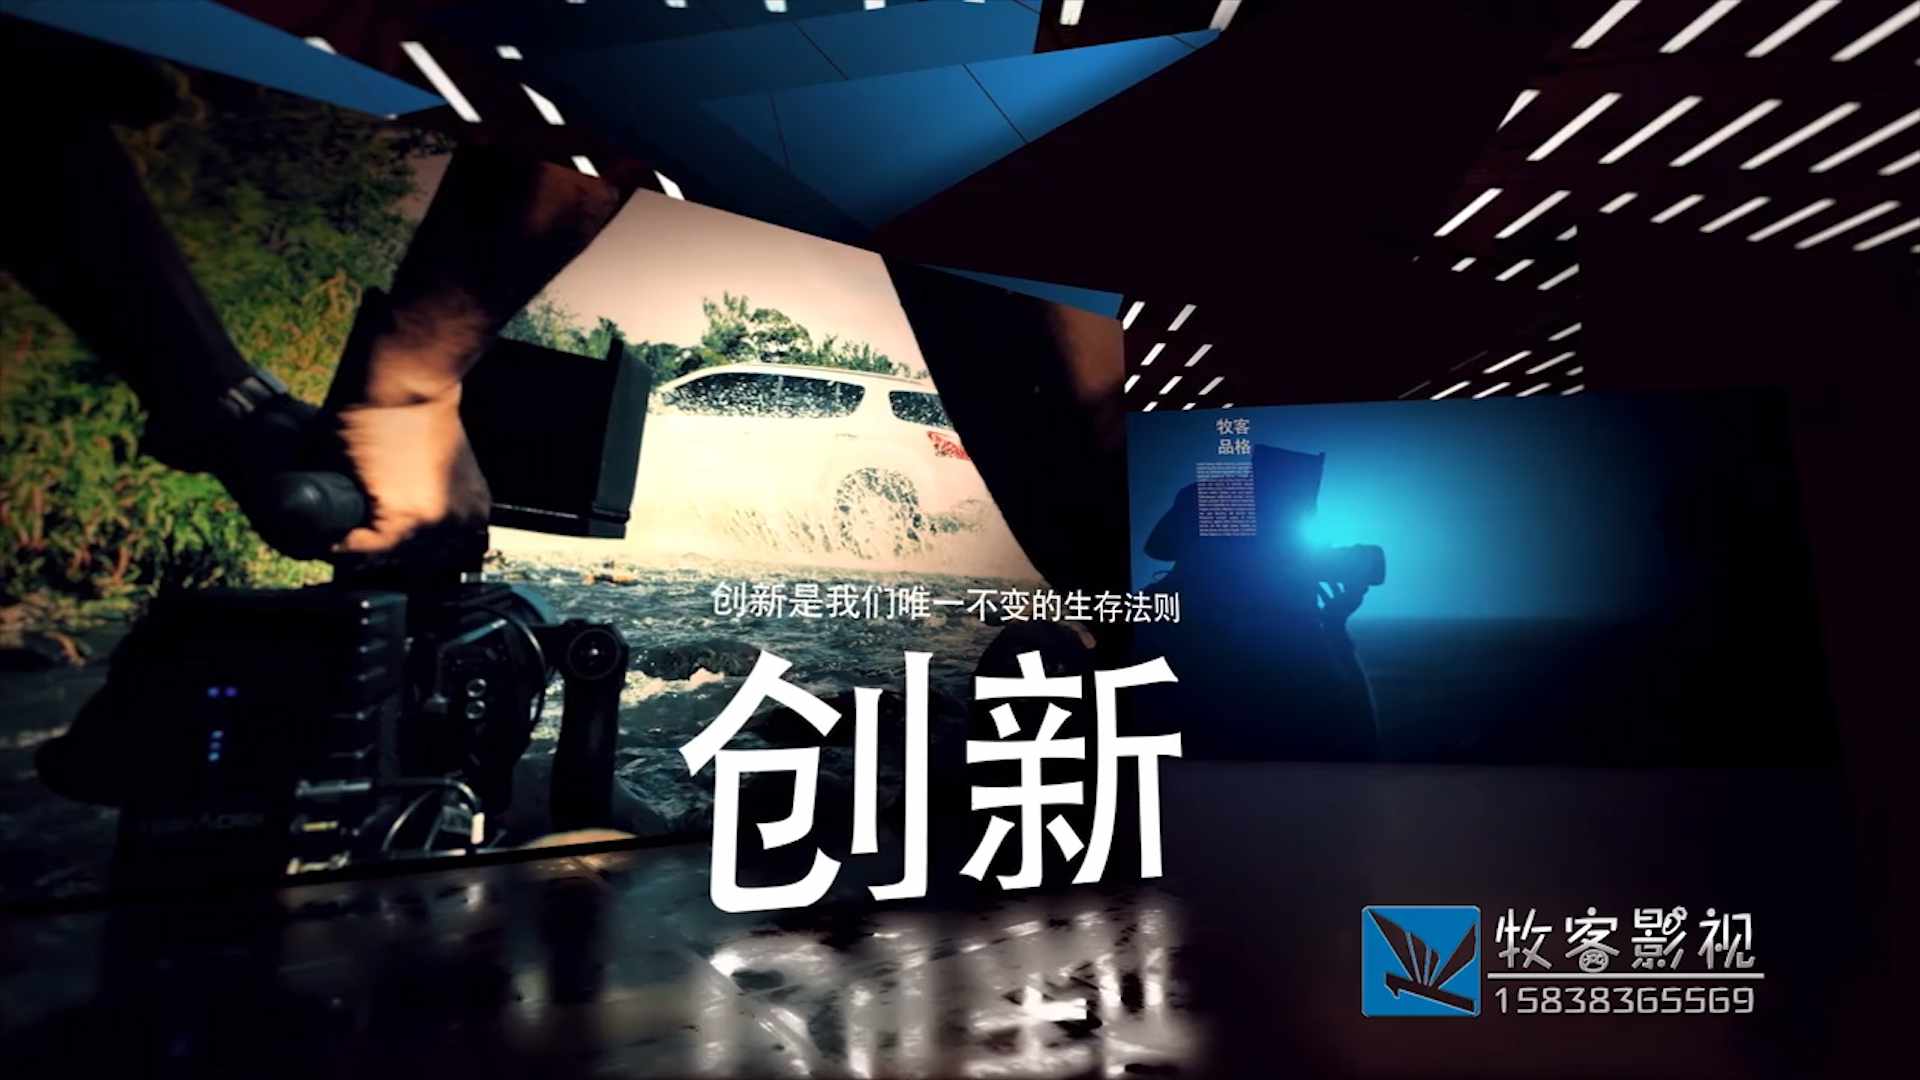 中国移动电视广告“游戏篇”创意脚本